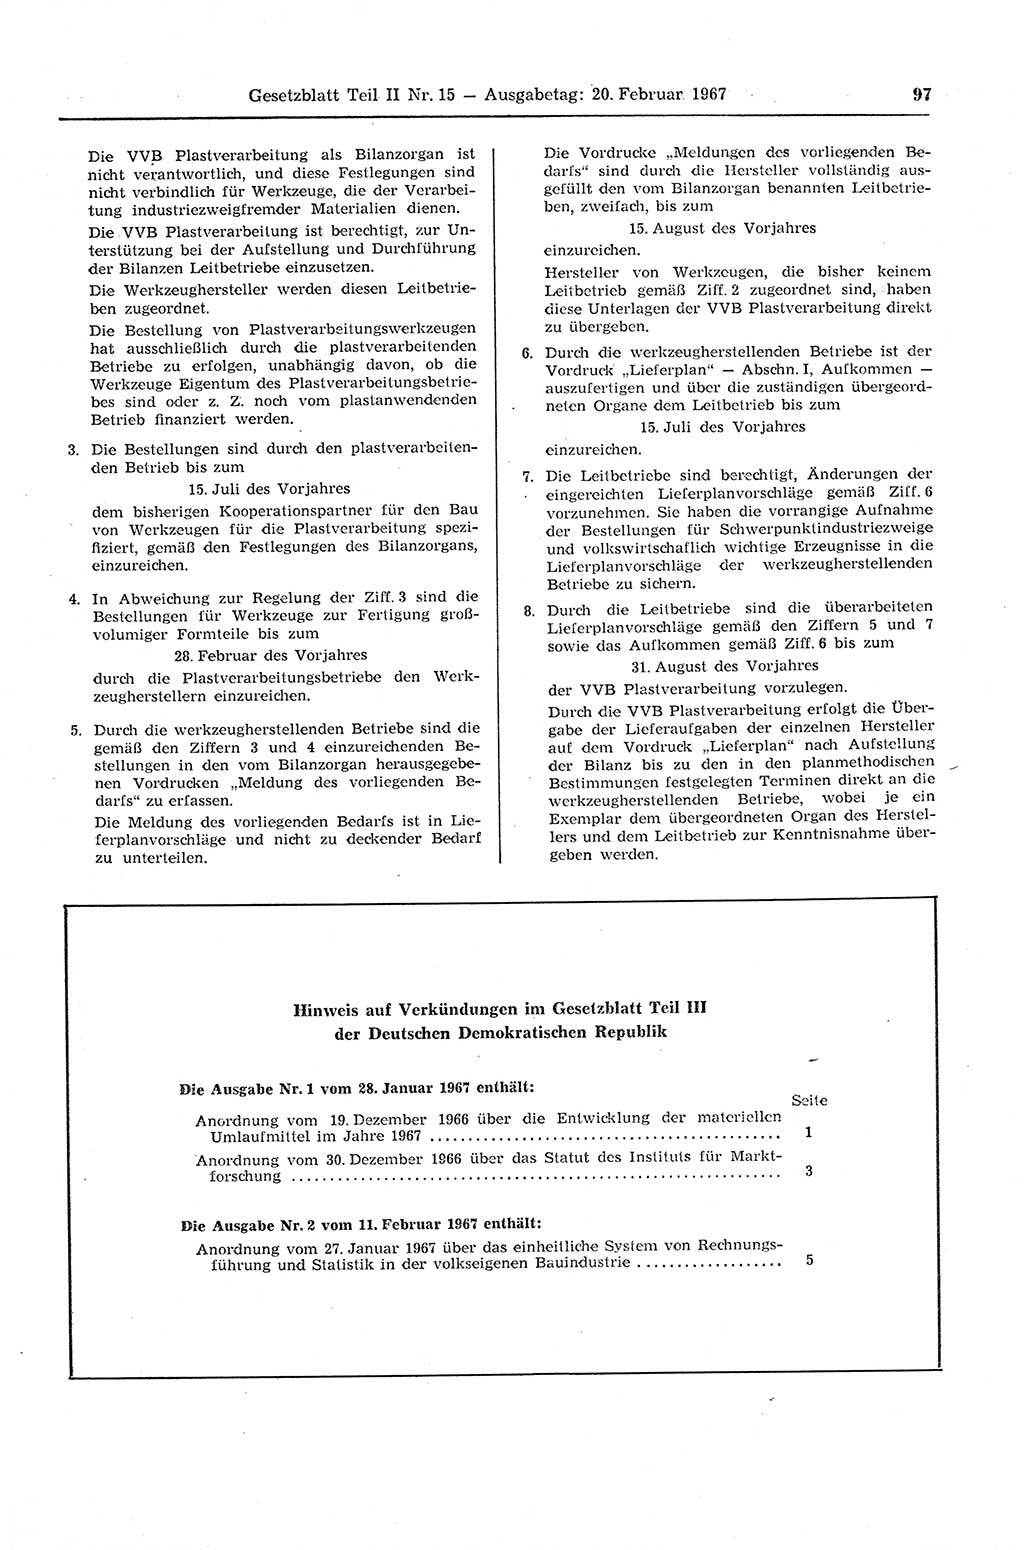 Gesetzblatt (GBl.) der Deutschen Demokratischen Republik (DDR) Teil ⅠⅠ 1967, Seite 97 (GBl. DDR ⅠⅠ 1967, S. 97)